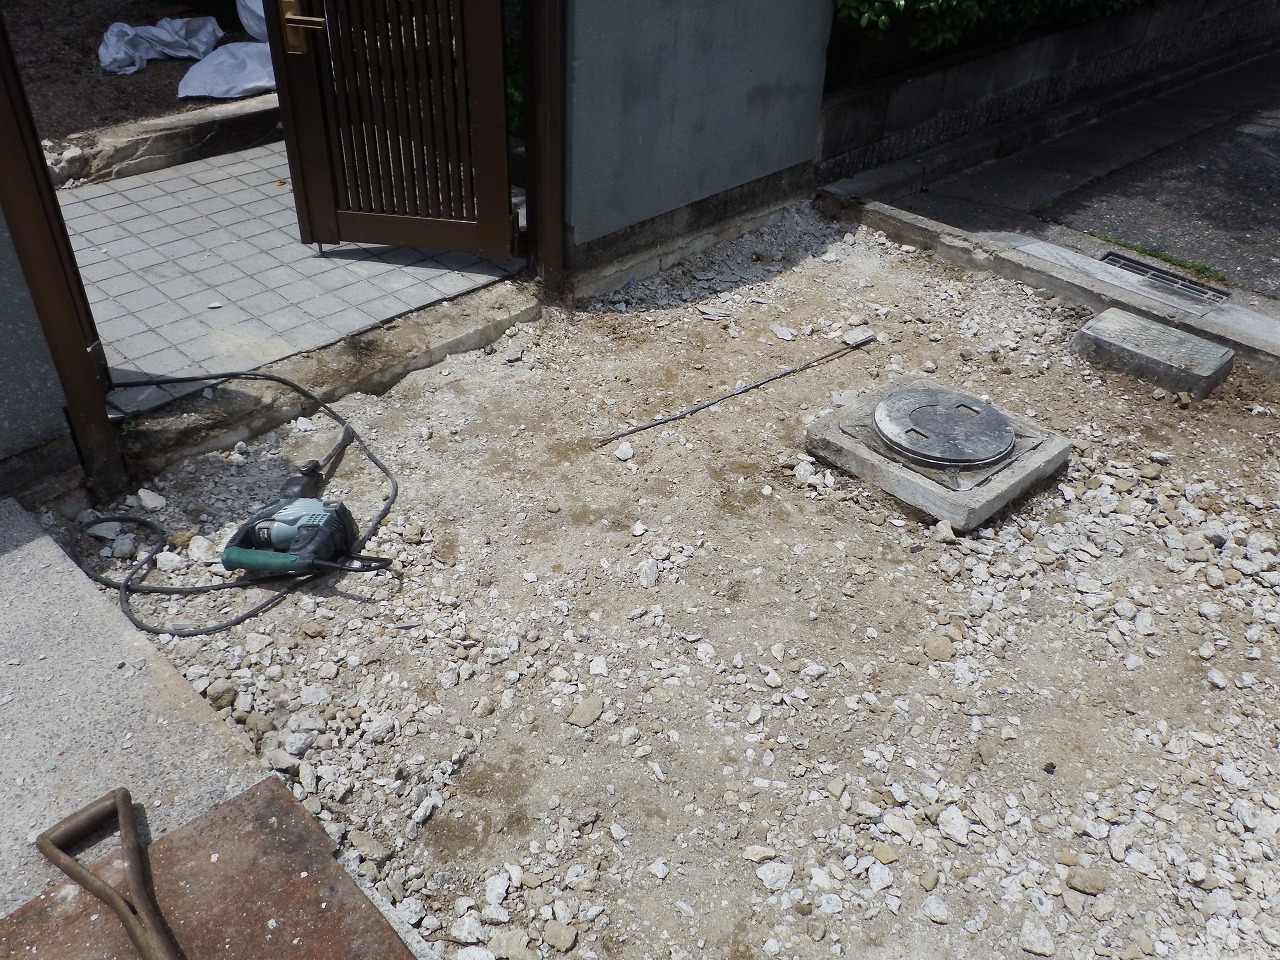 奈良市都祁のお宅で外構工事のための現場調査、玄関前のタイル床撤去